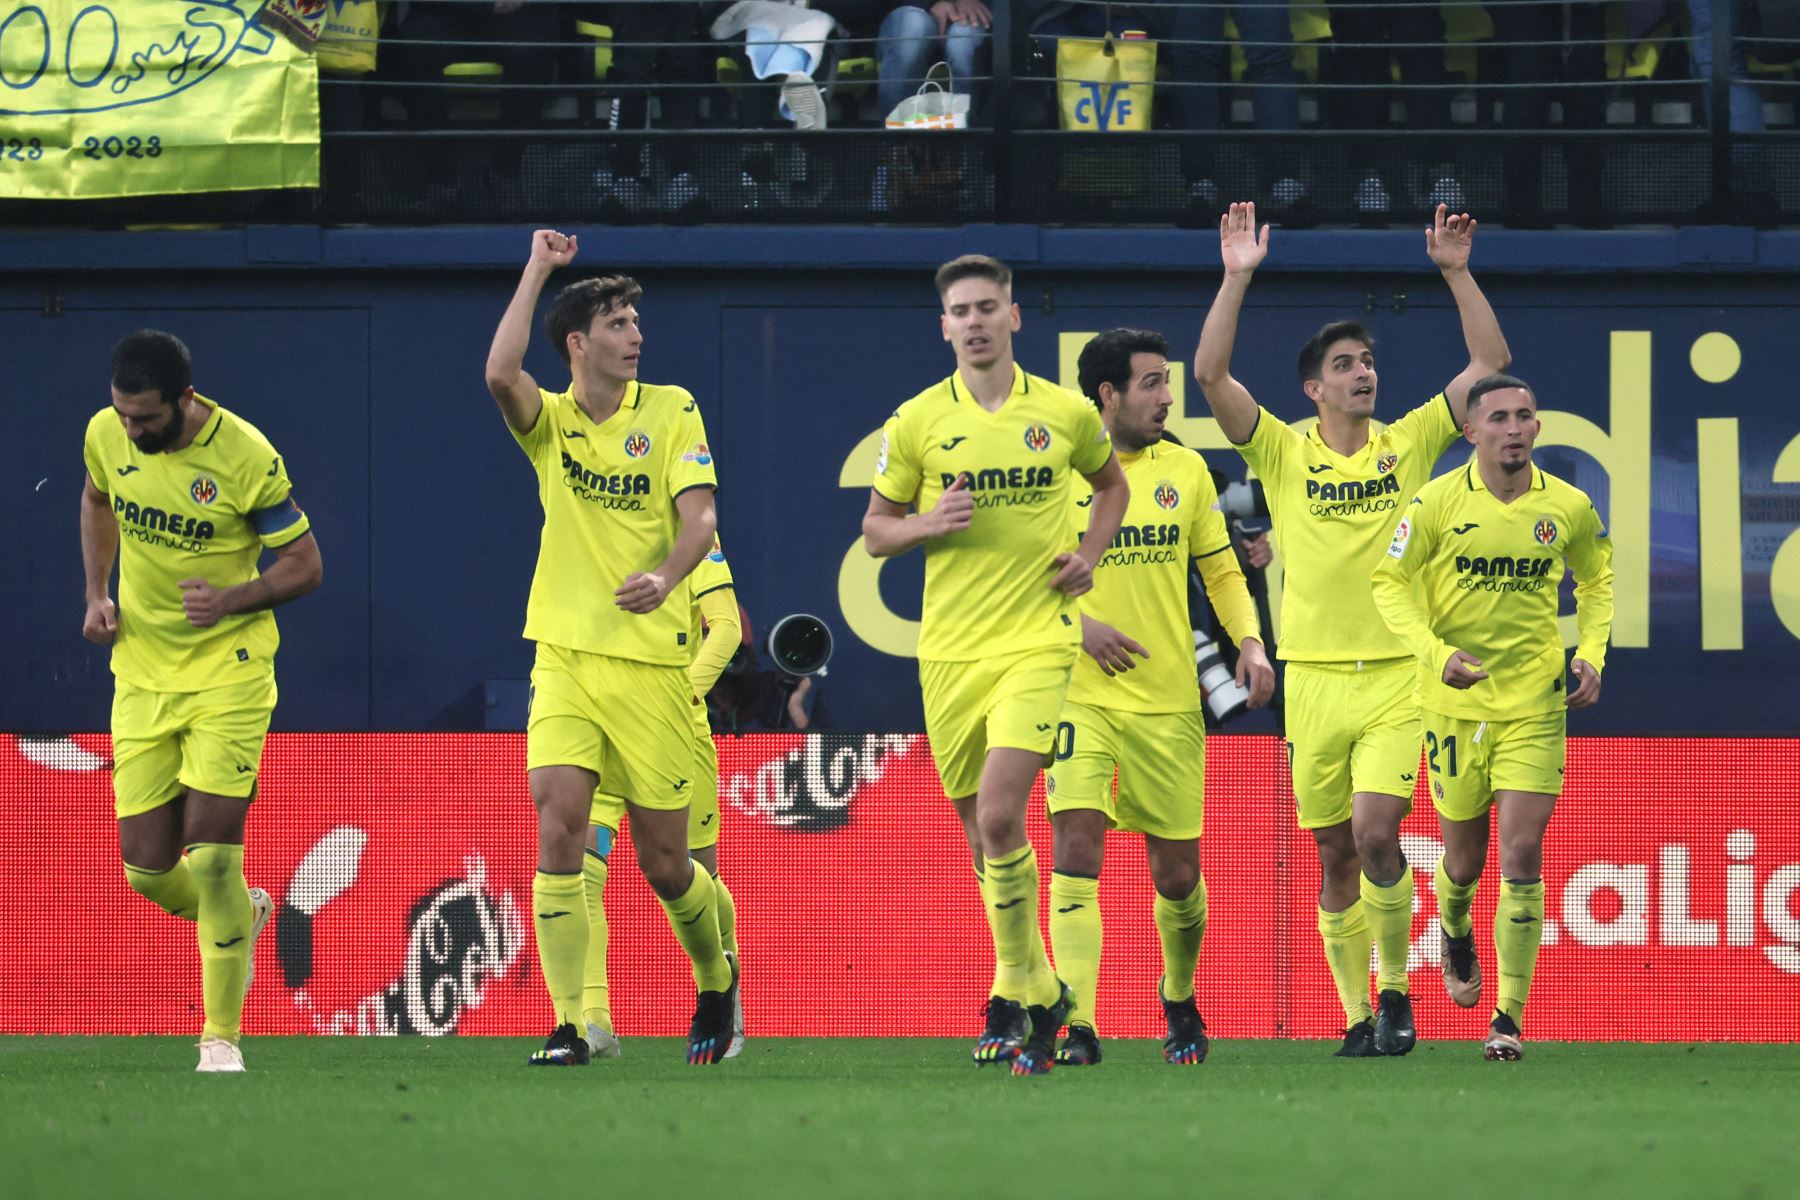 Los jugadores del Villareal celebran el gol durante el partido de fútbol de la Liga española entre el Villarreal CF y el Real Madrid. Foto: AFP